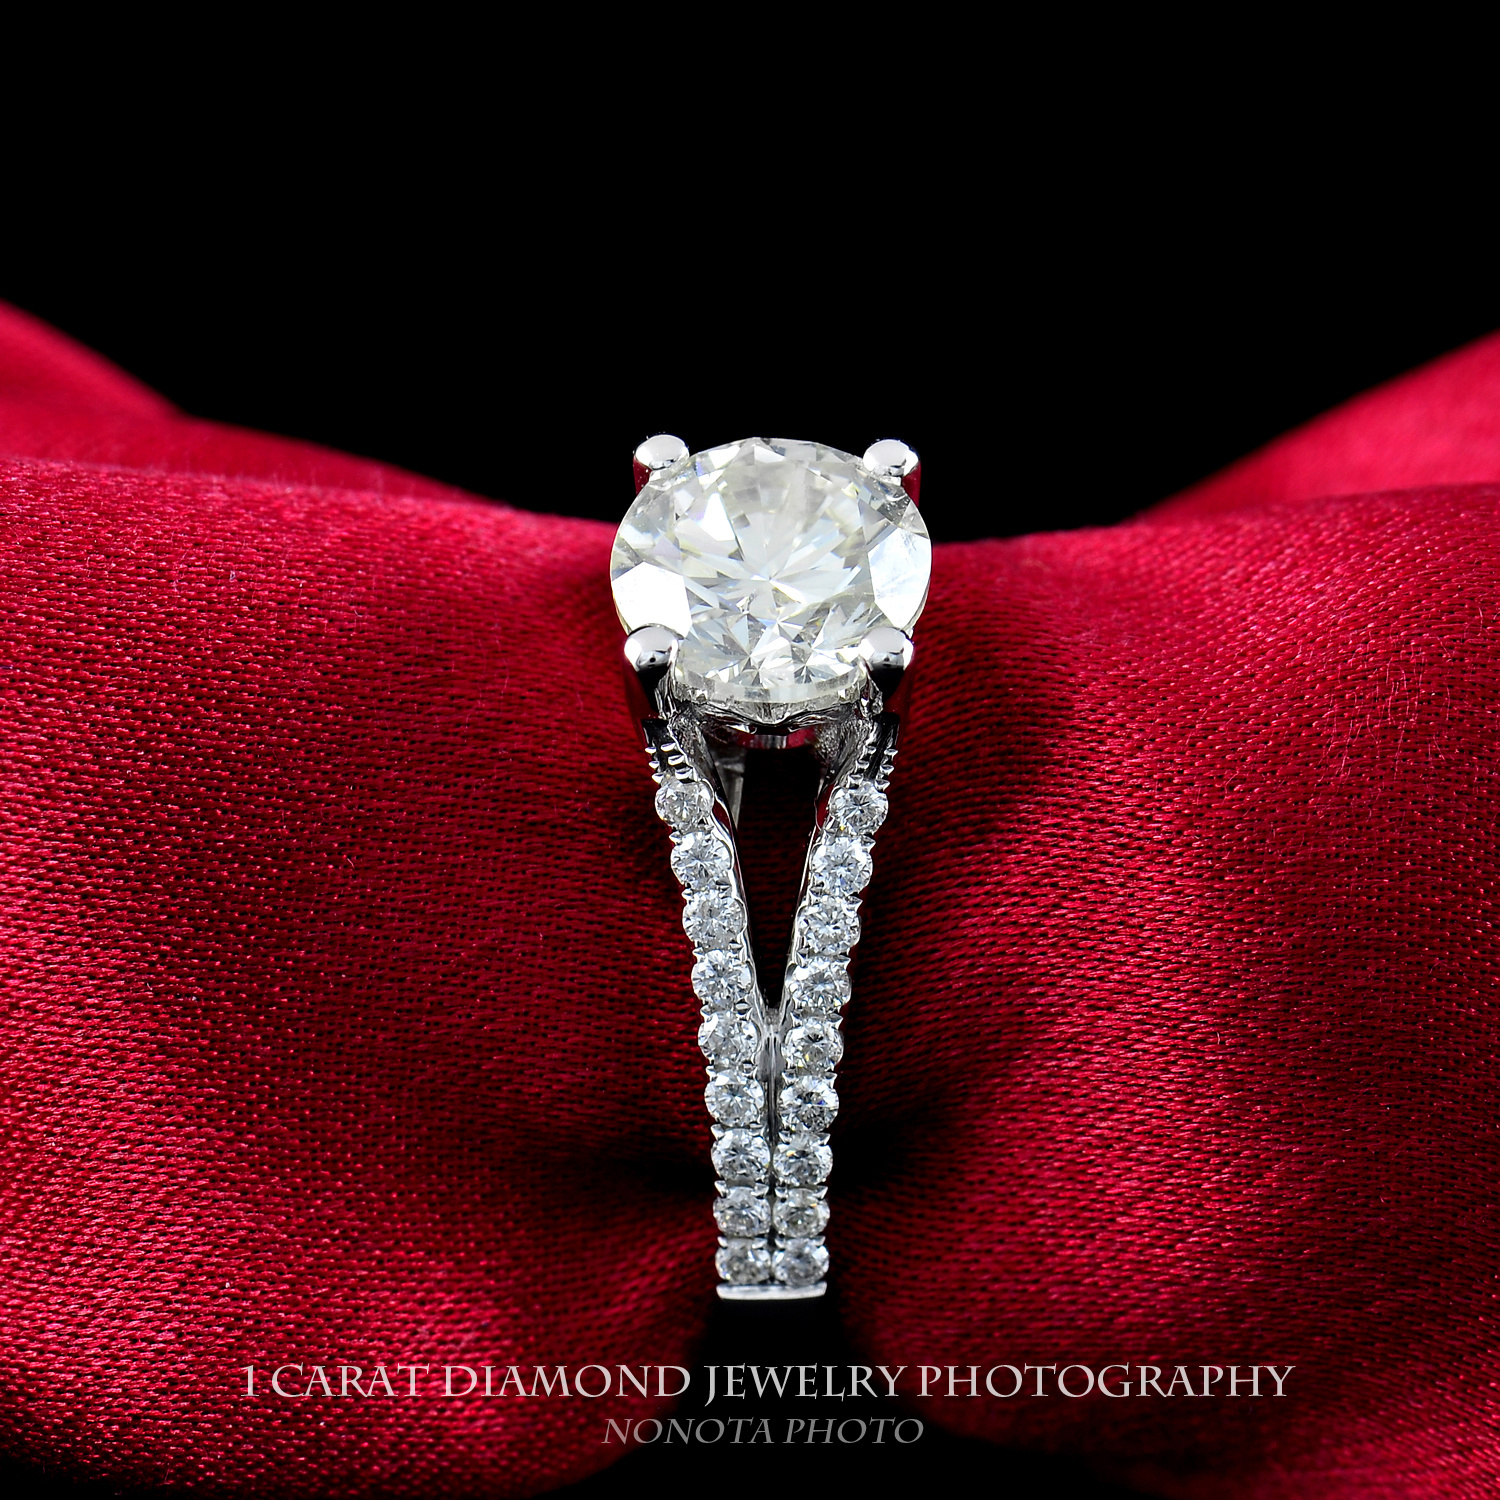 高清图|蒂芙尼铂金镶嵌枕形钻石戒指图片1|腕表之家-珠宝